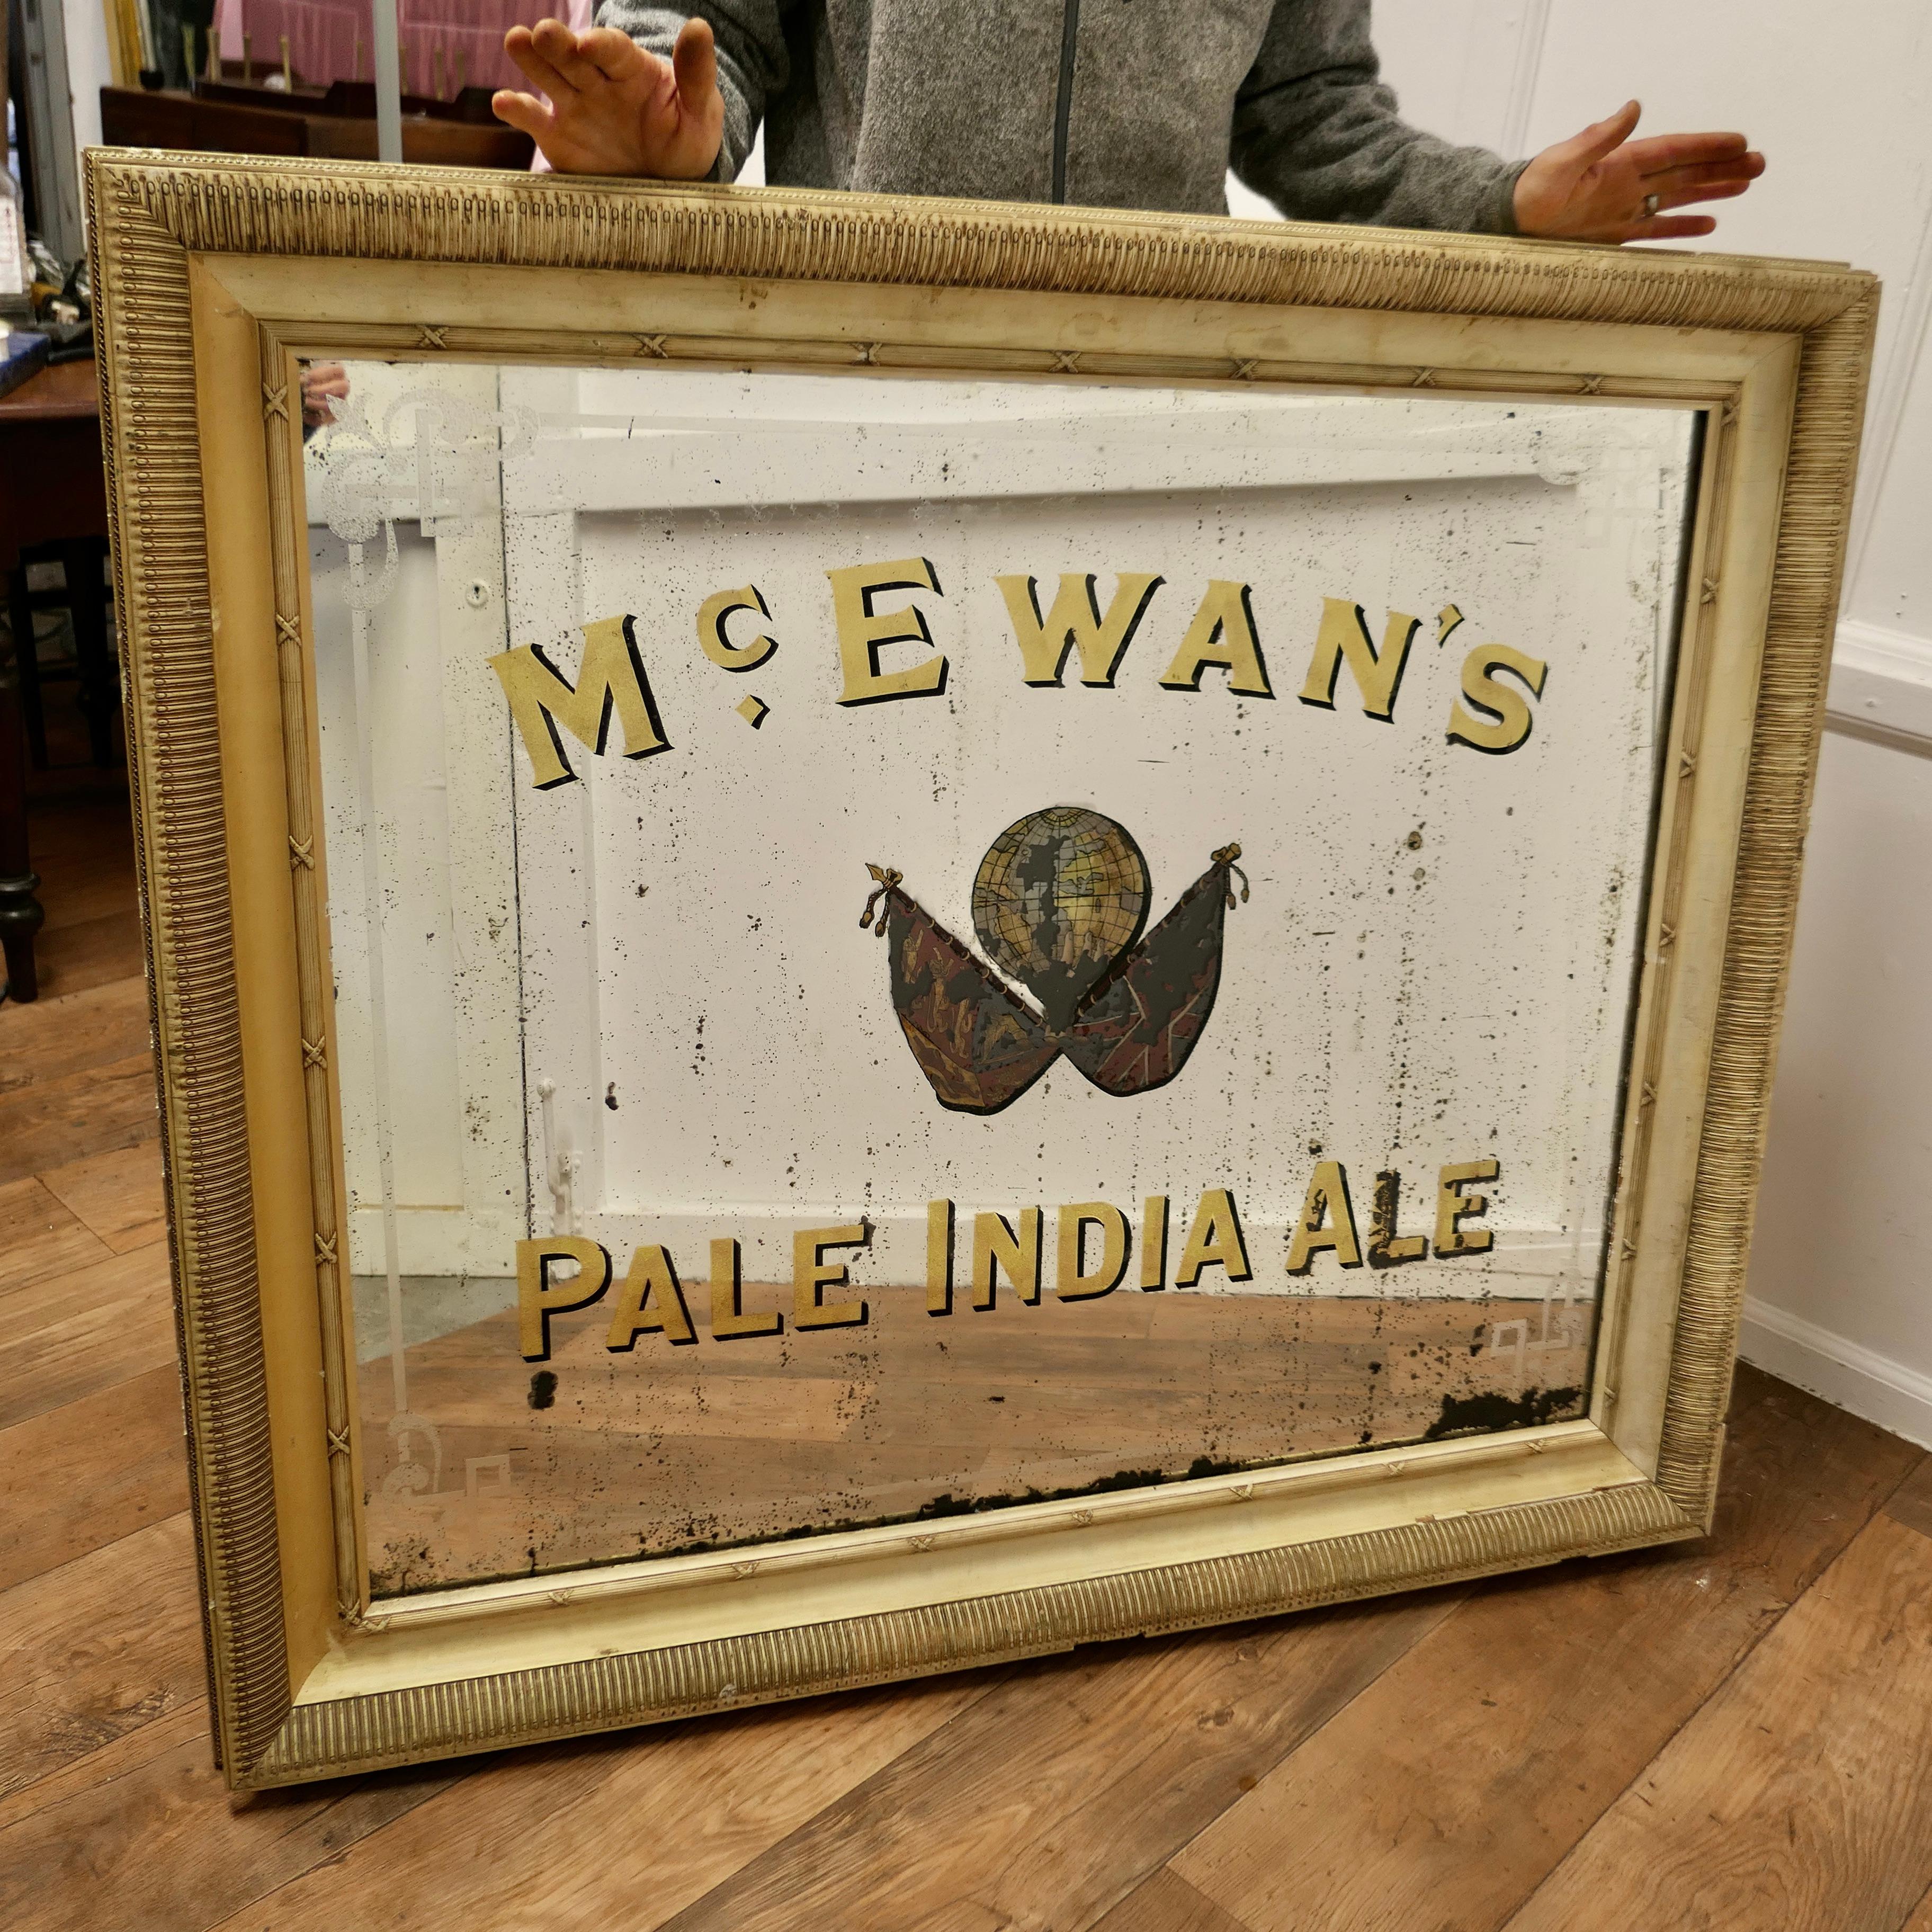 Ein großer McEwan's Pale India Ale Werbespiegel, Pub Sign Spiegel für McEwans

Es handelt sich um einen seltenen, noch erhaltenen Werbespiegel für McEwan's Pale India Ale, mit Blattgold und geätztem Glas  
In der Mitte des Spiegels befindet sich das